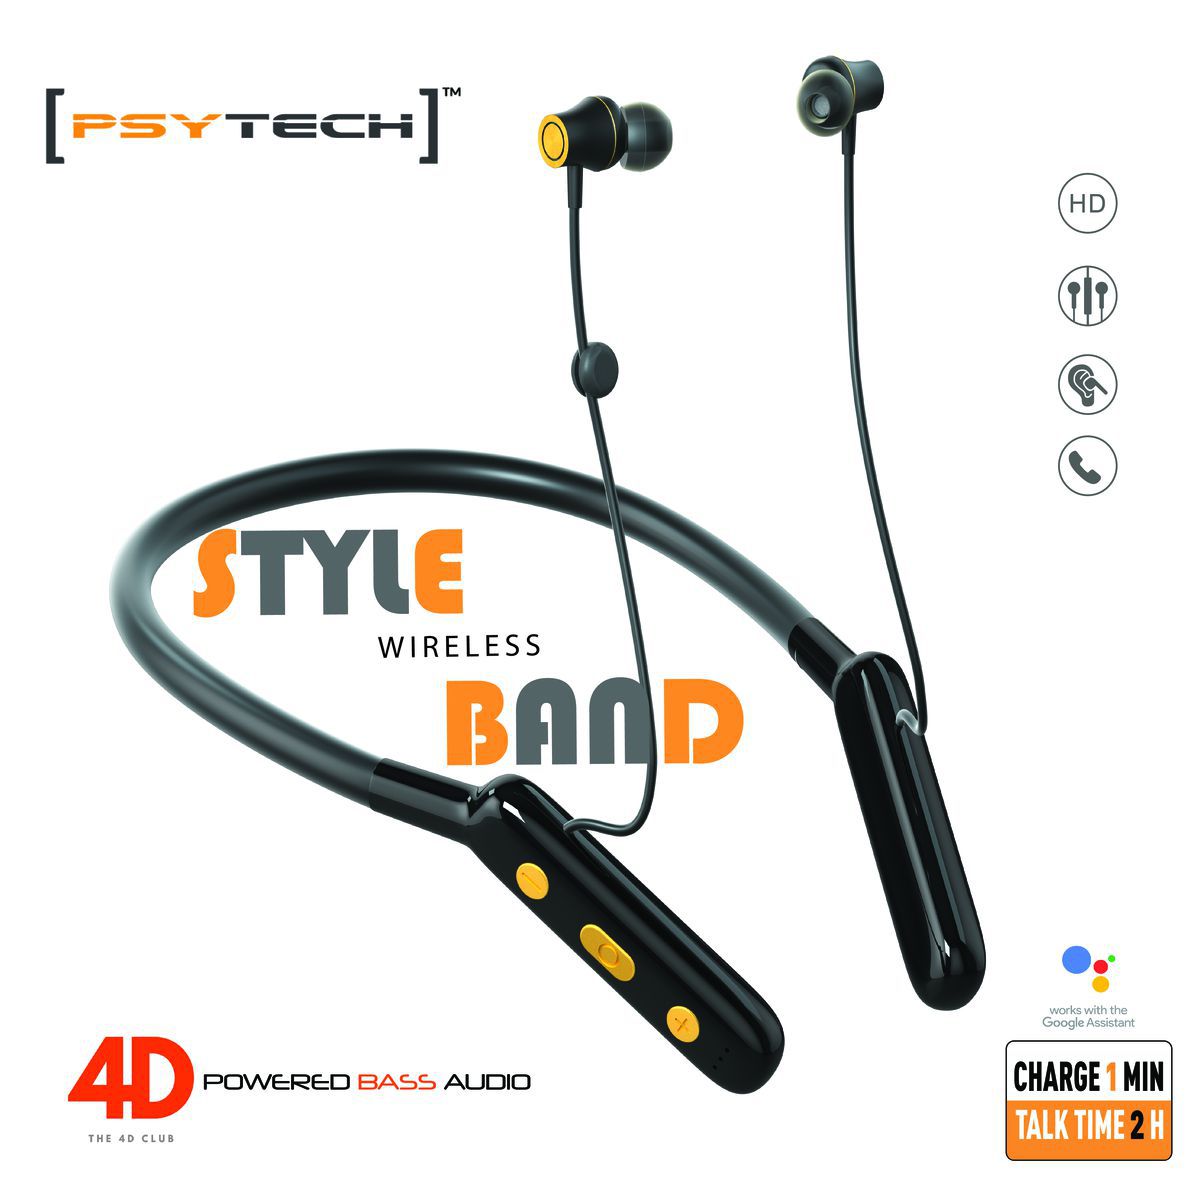 Psytech STYLE BAND 80 HOURS TALK HOURS IPX5 4D BASS SPORT Bluetooth headphone / Bluetooth EARPHONE,NECKBAND,HEADPHONE,BLUETOOTH